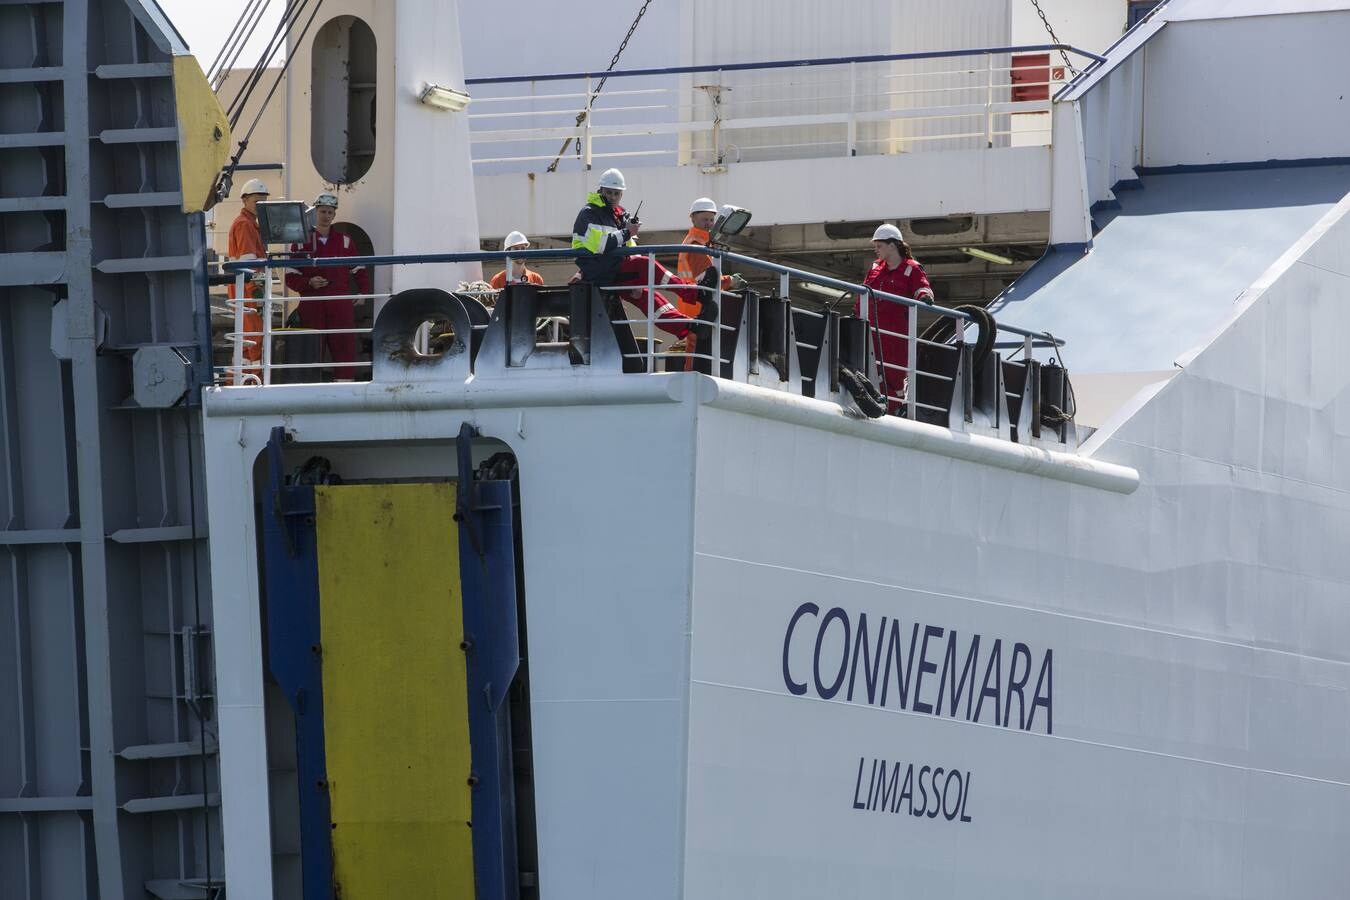 El barco 'Connemara' ha iniciado hoy su ruta de la localidad irlandesa de Cork a Santander, la primera conexión marítima entre Irlanda y España, con el objetivo de trasladar a 40.000 personas y 20.000 camiones al año cuando la línea esté consolidada.